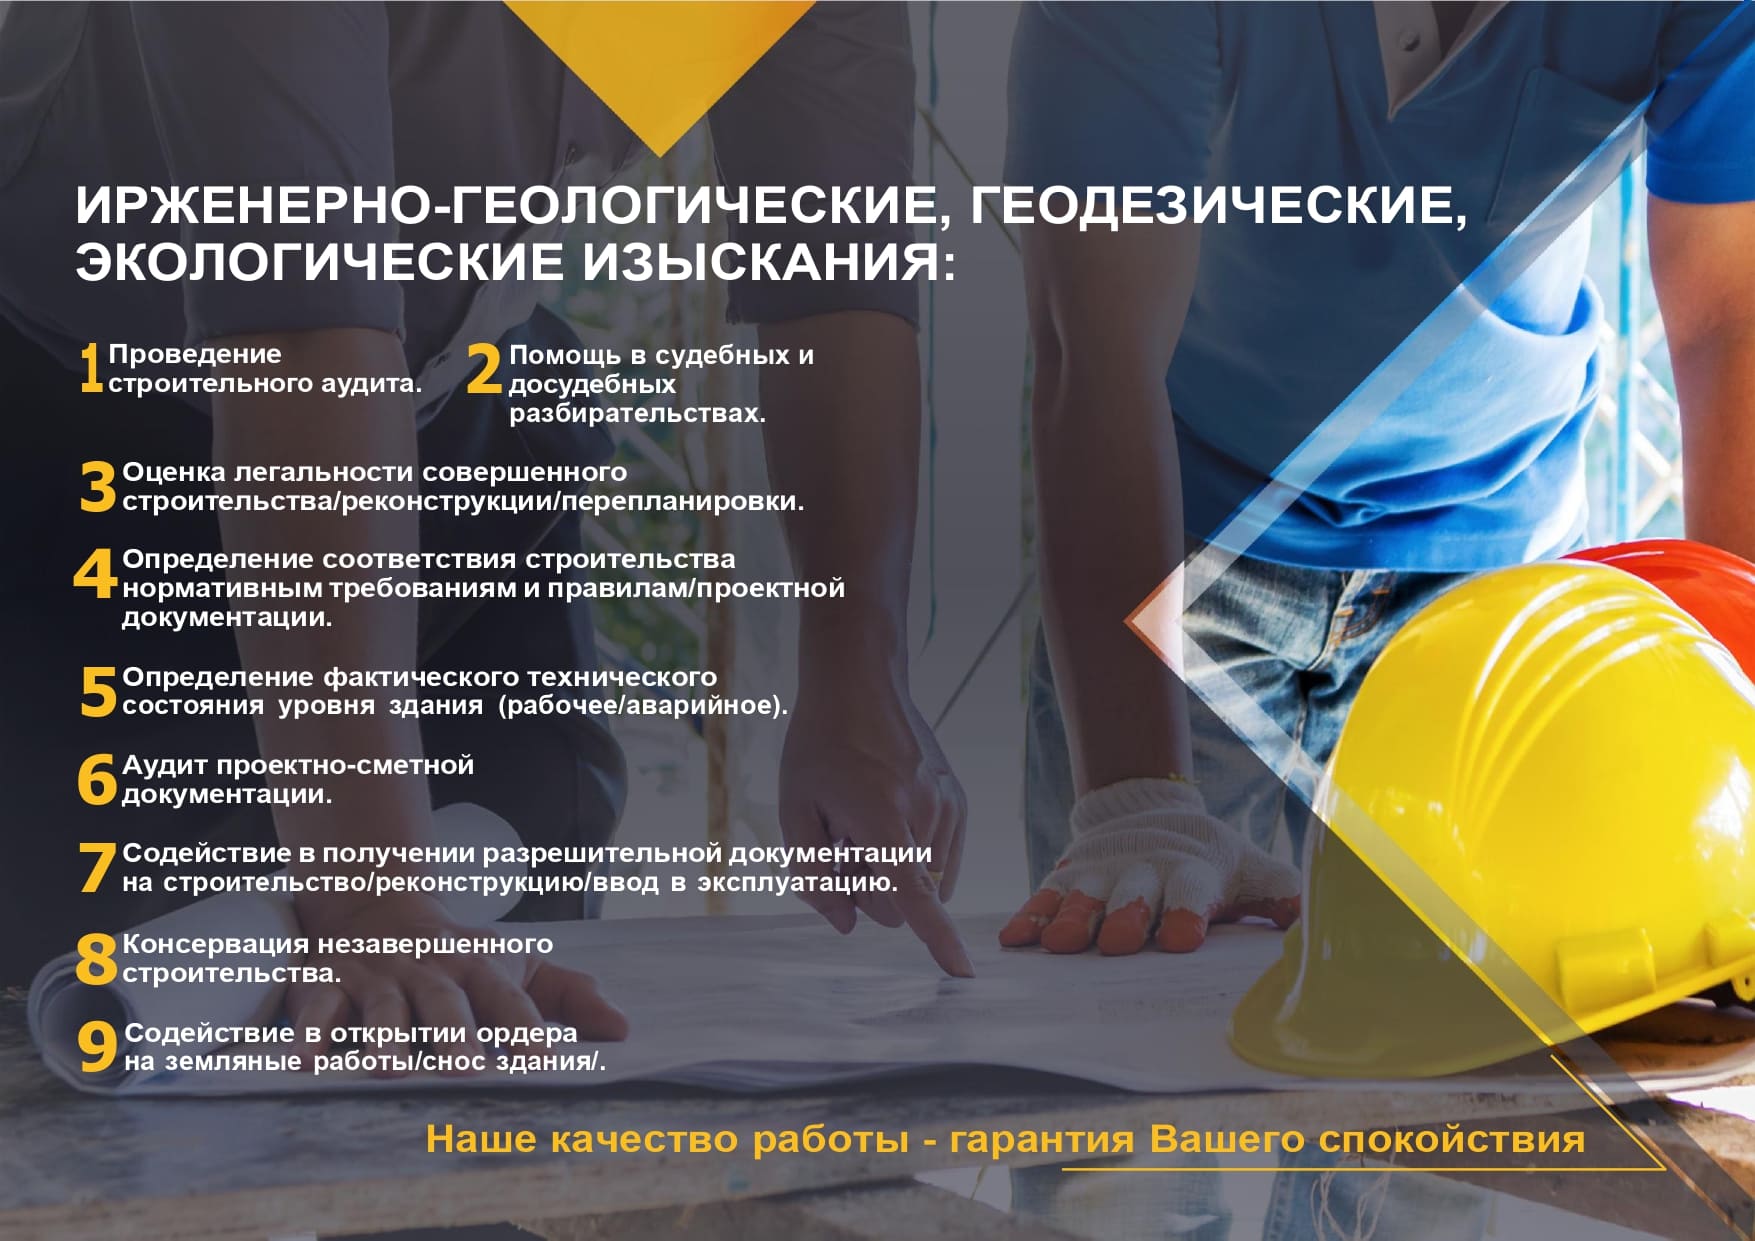 Инженерные изыскания для строительства в Москве и Московской области, выполнение инженерно-геологических, геоезических, экологических исследований, цены